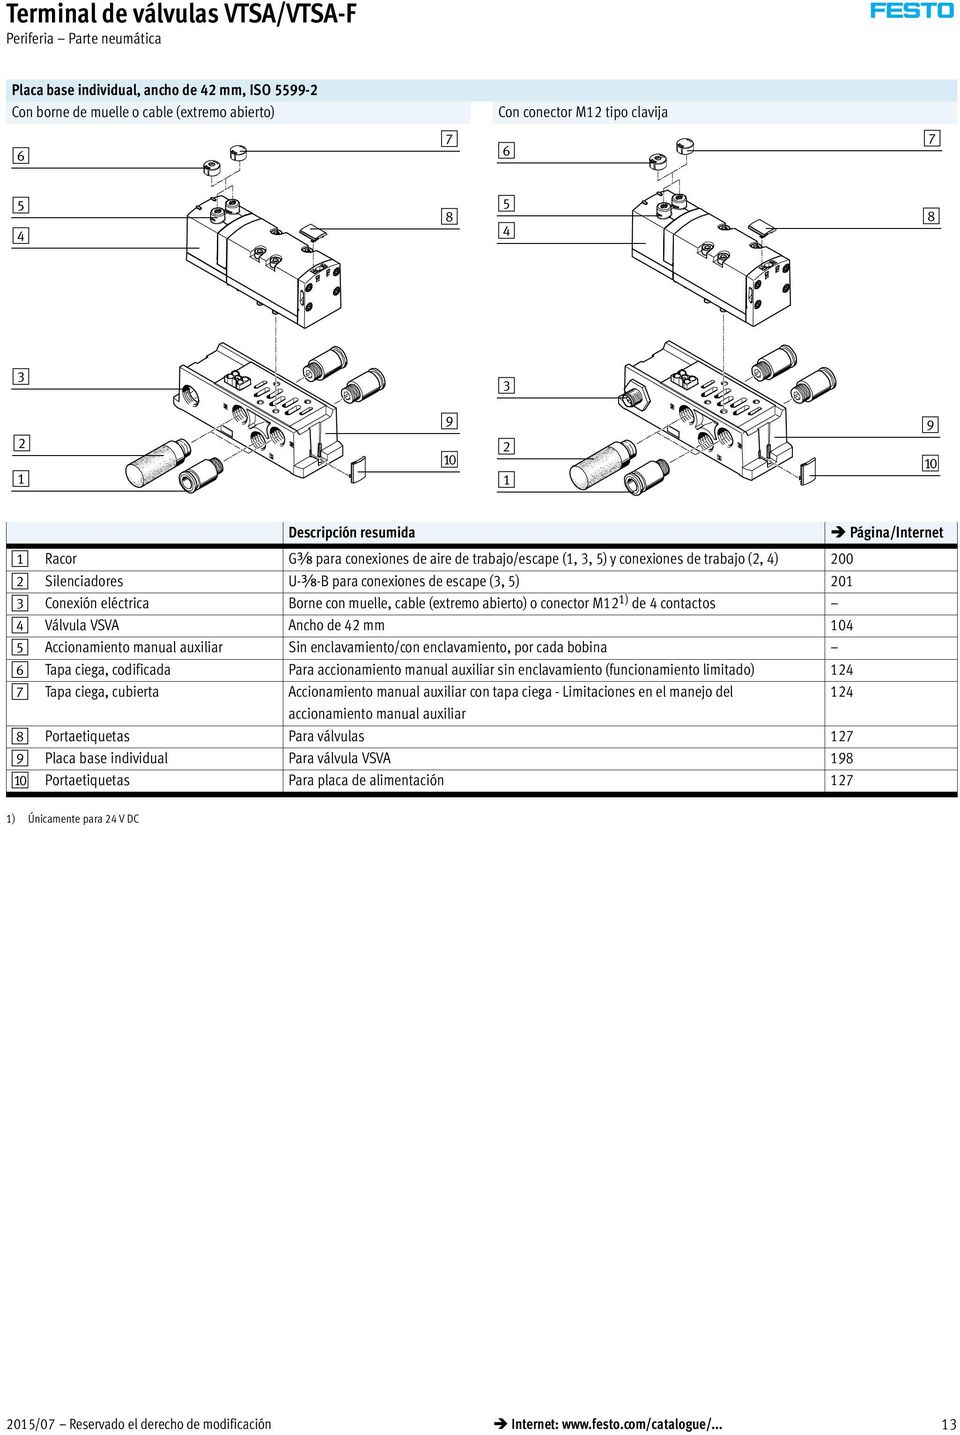 Conexión eléctrica Borne con muelle, cable (extremo abierto) o conector M12 1) de 4 contactos 4 Válvula VSVA Ancho de 42 mm 104 5 Accionamiento manual auxiliar Sin enclavamiento/con enclavamiento,